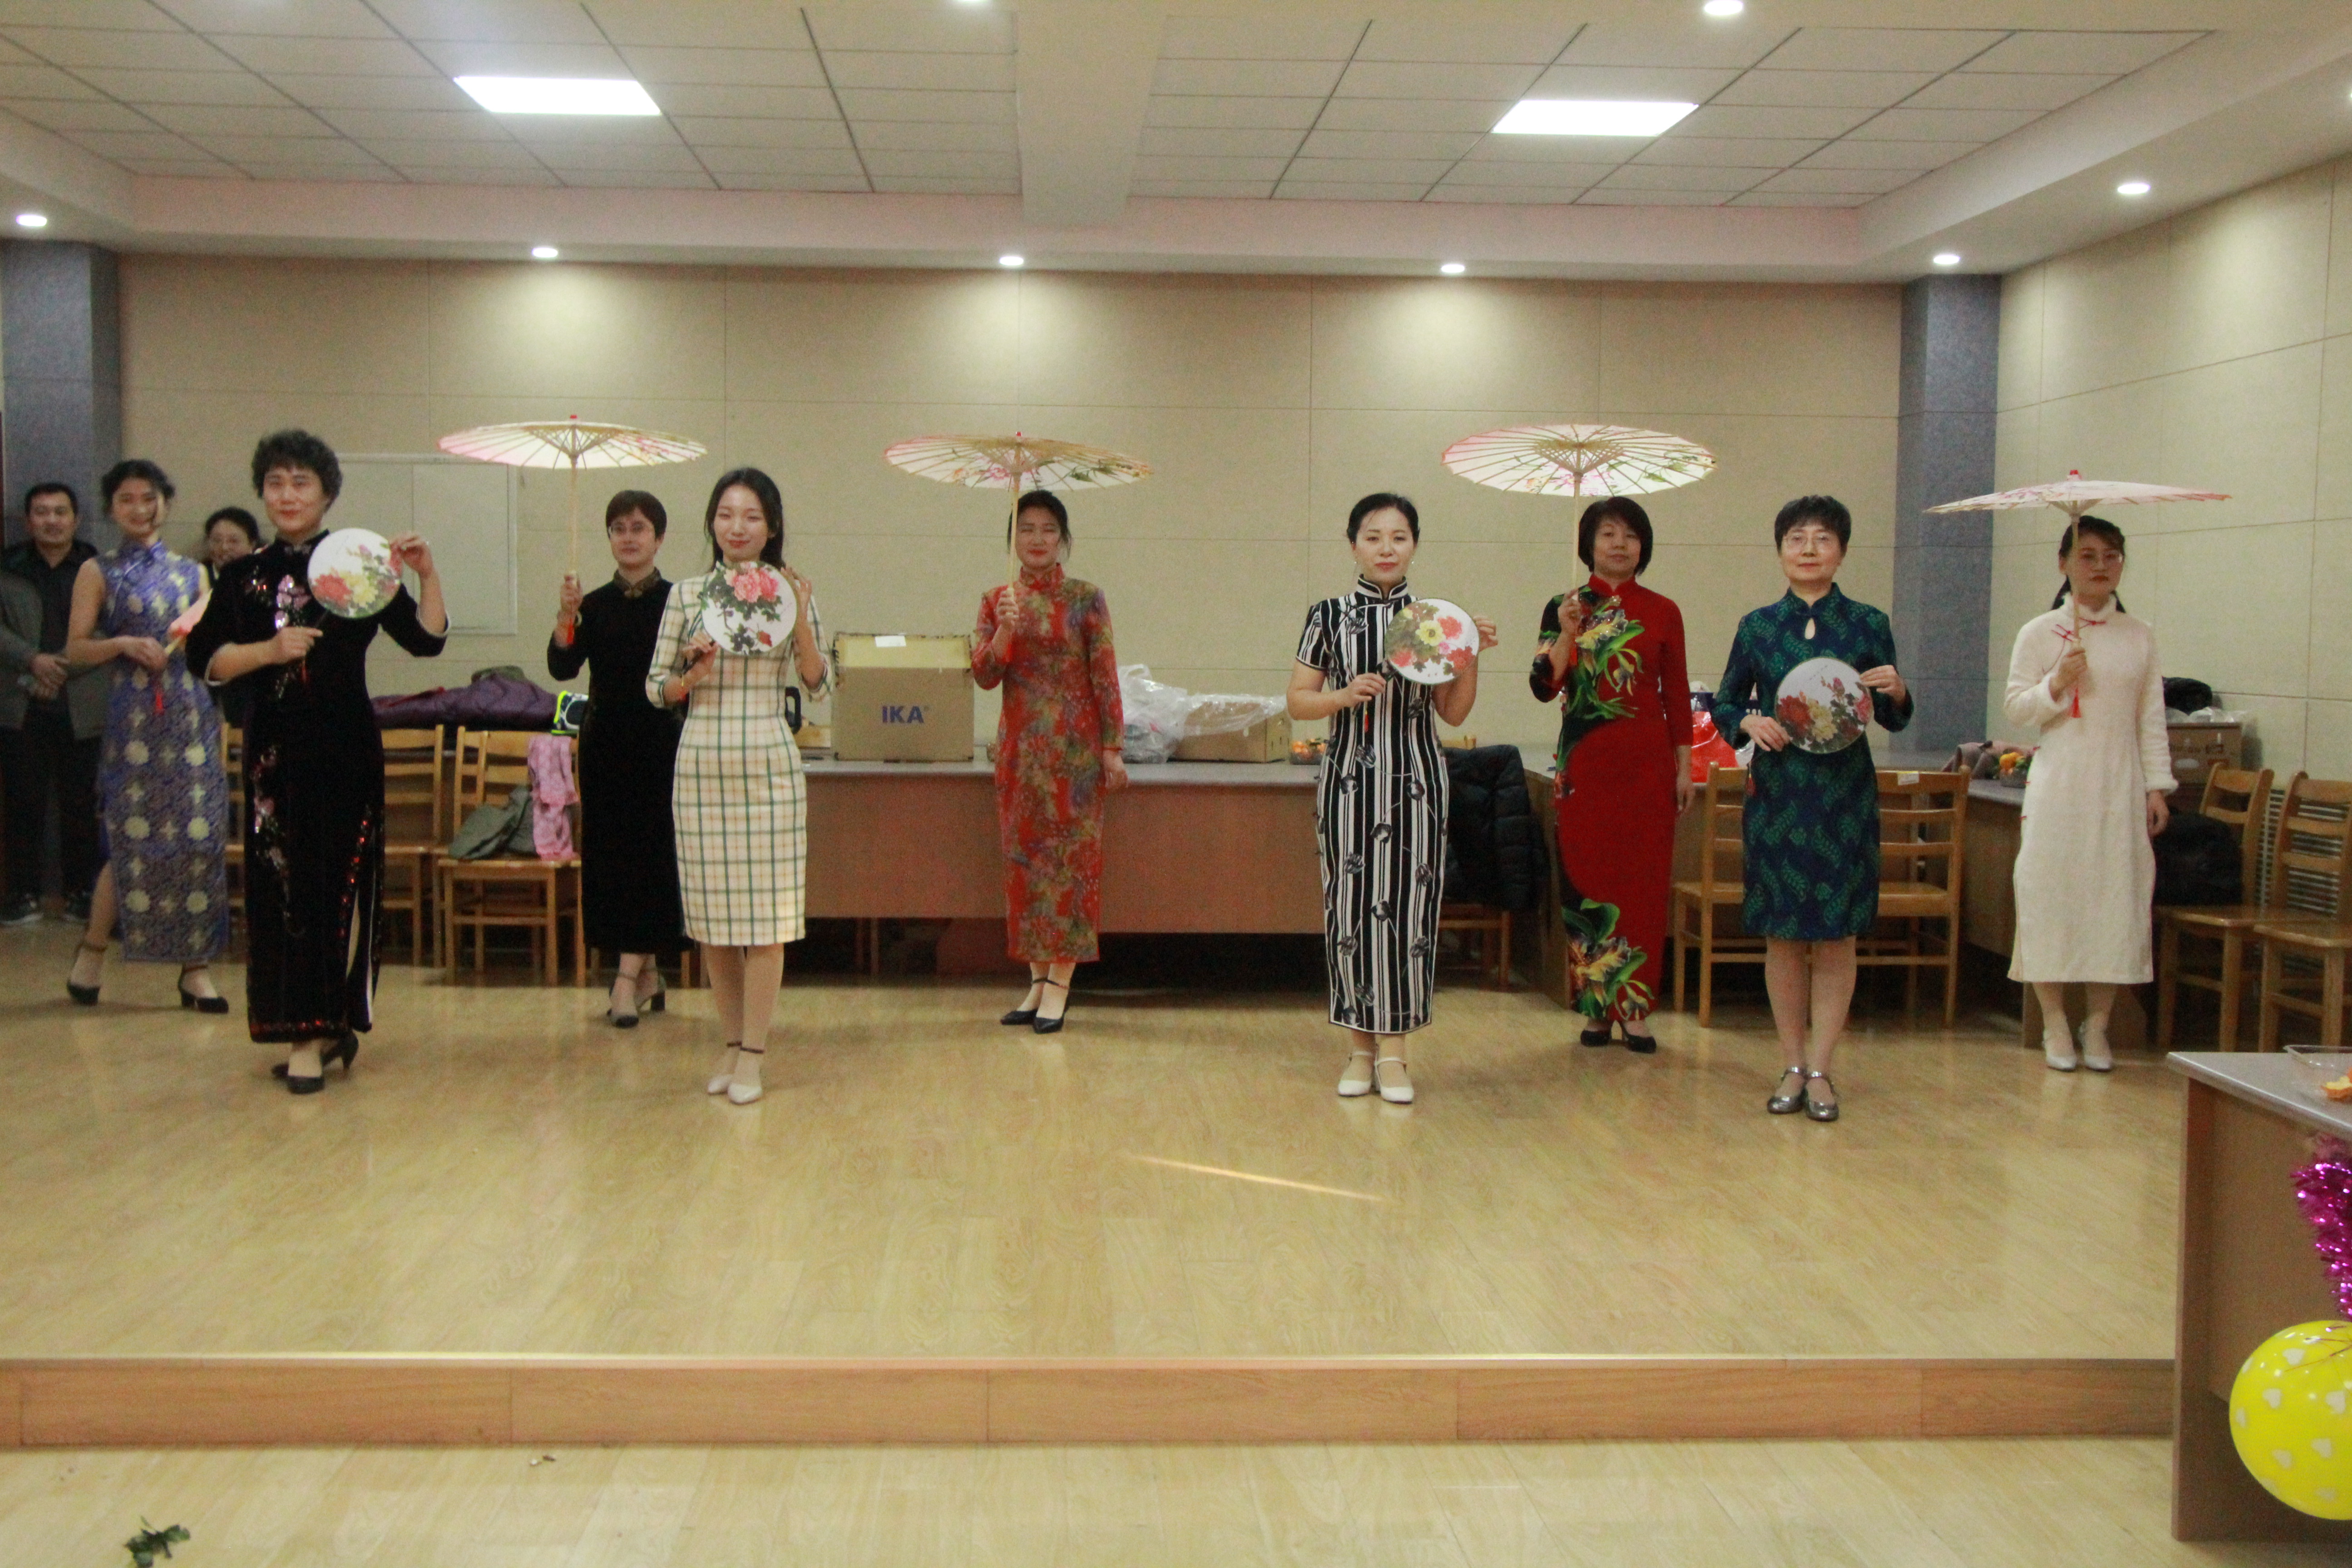 广州多所中小学开展礼仪特色课程和创意教育